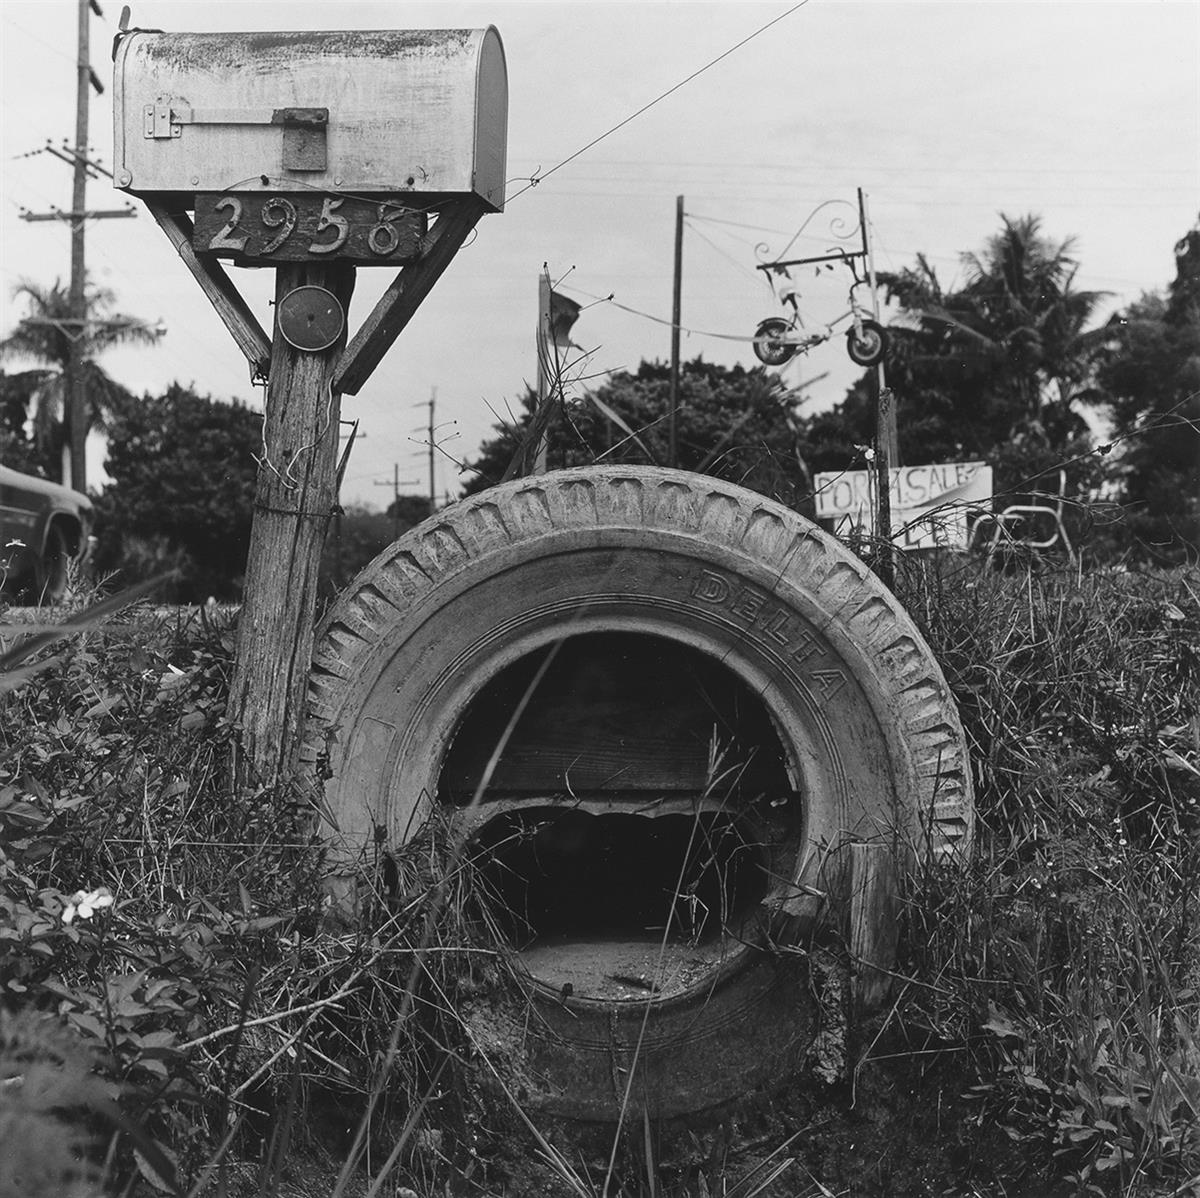 ROBERT RAUSCHENBERG (1925-2008) Study of a mailbox and tire.